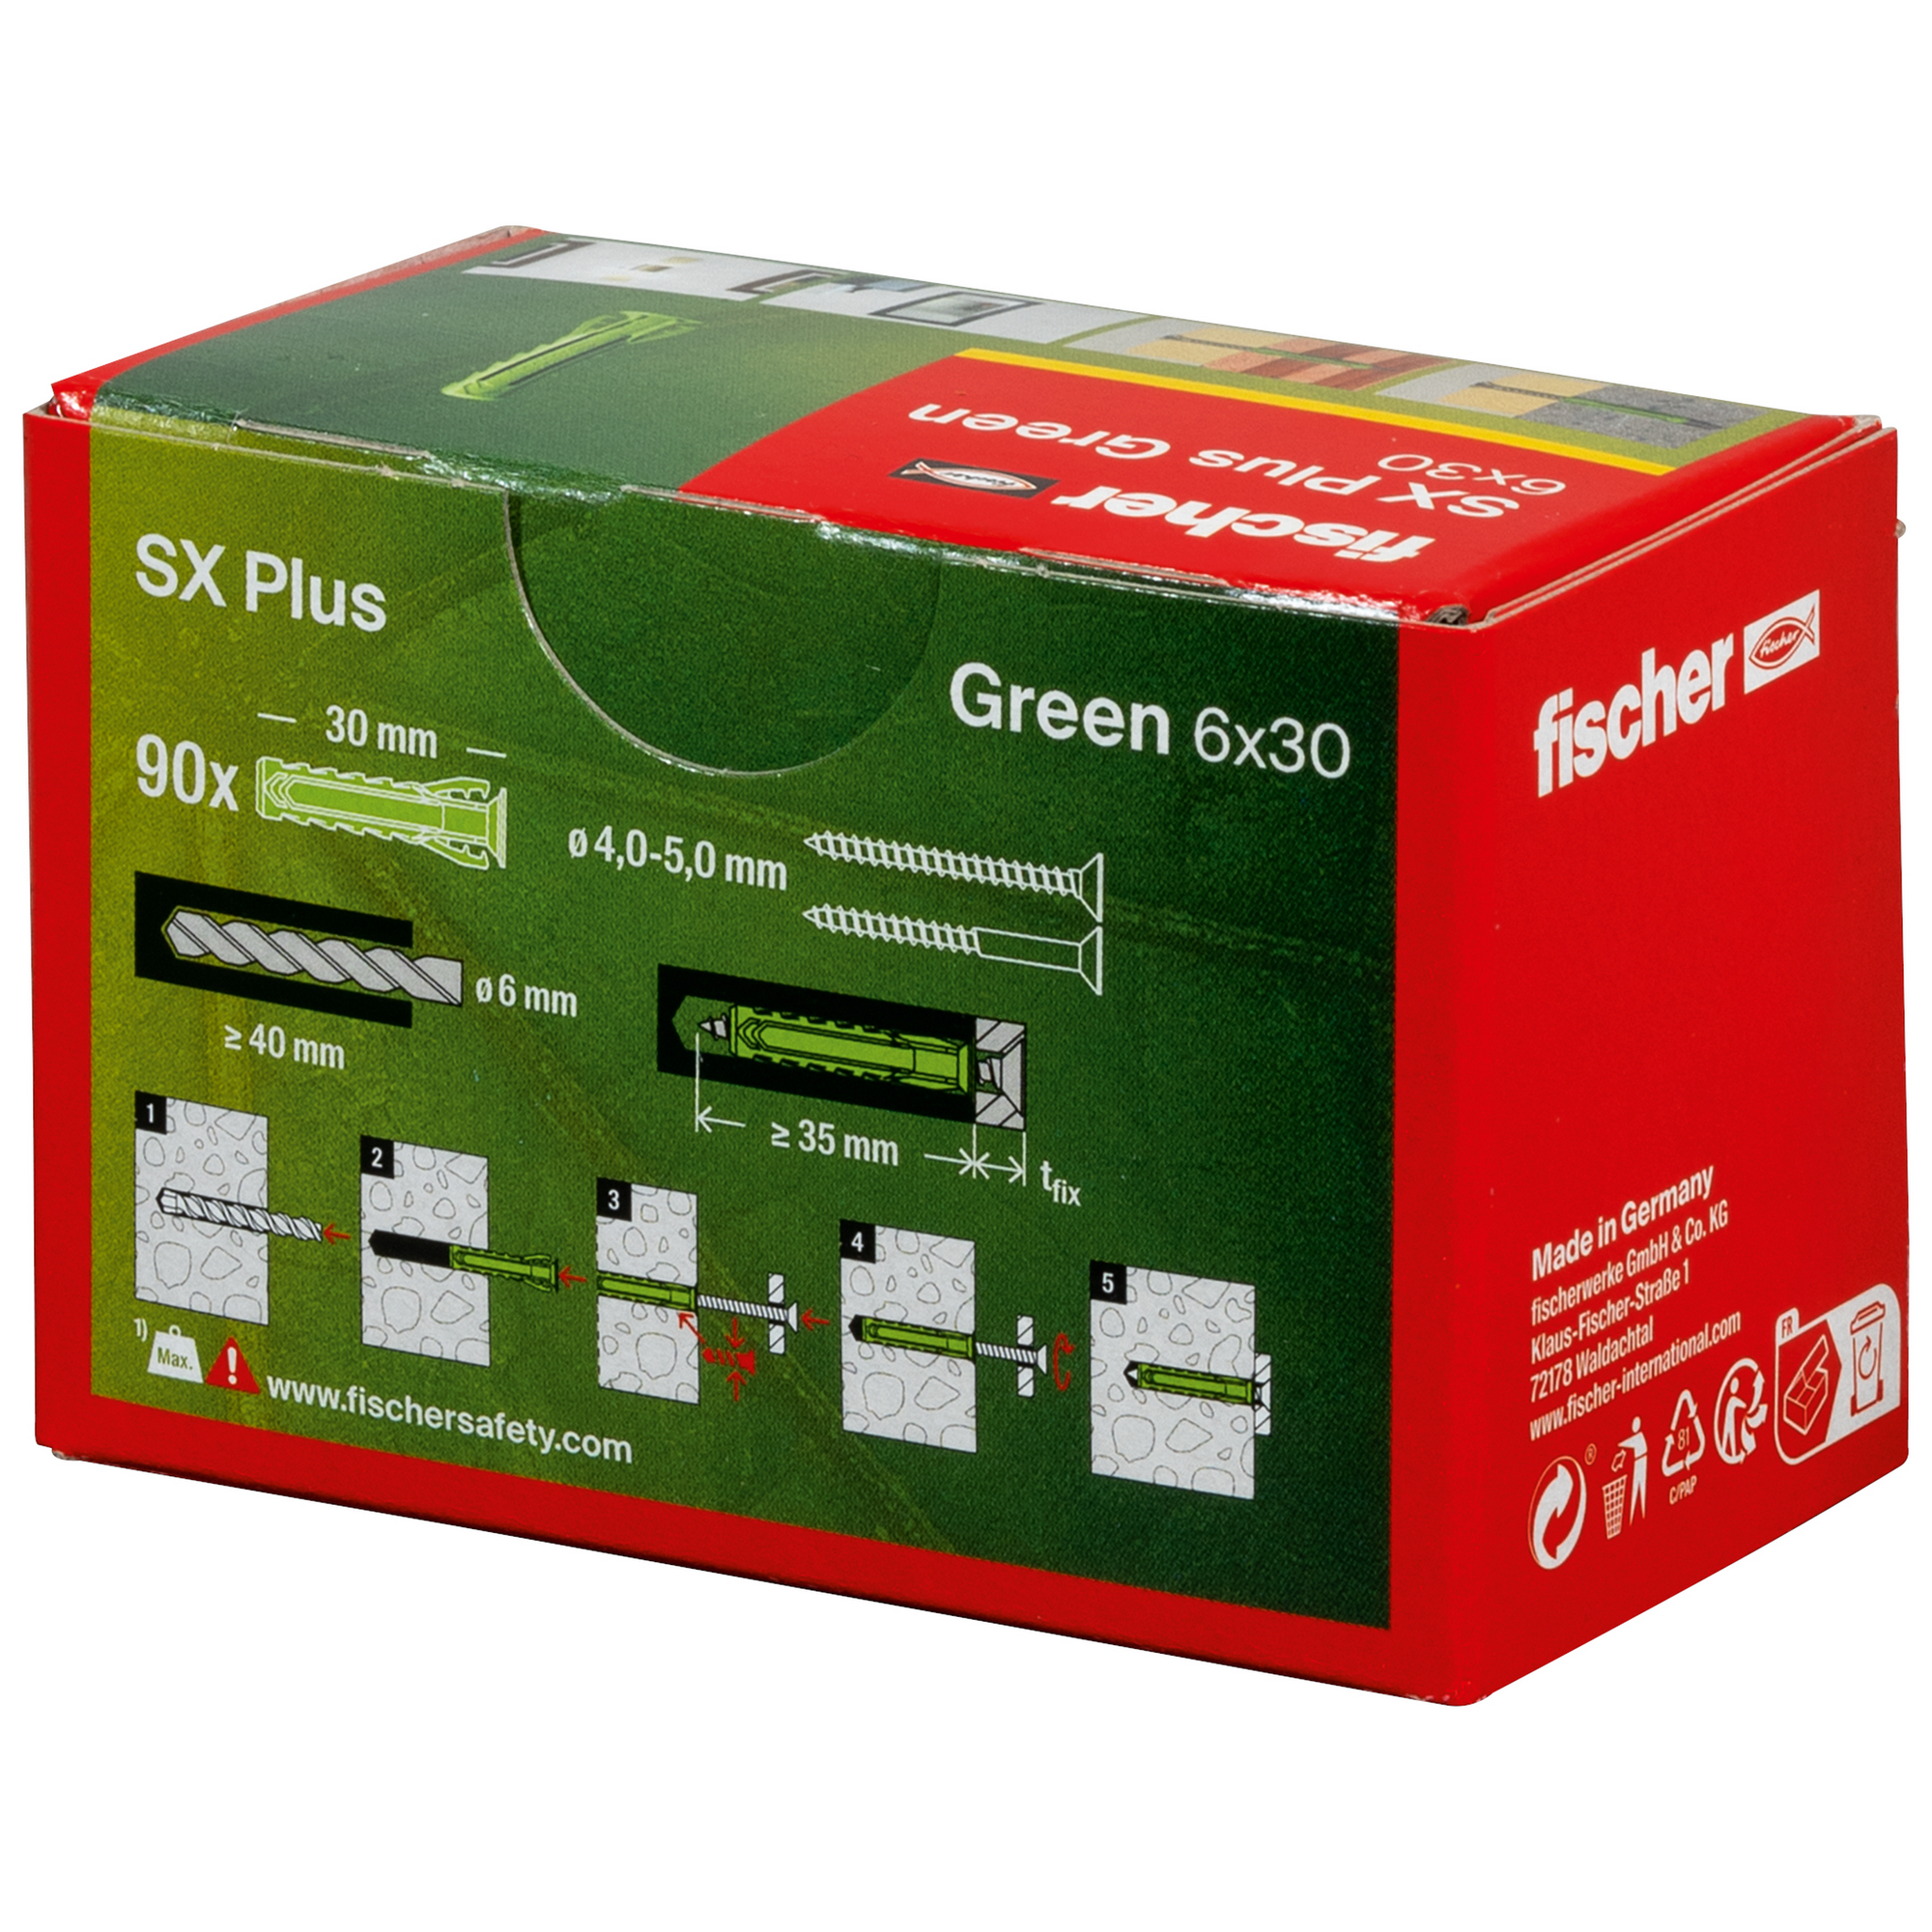 Spreizdübel-Set 'SX Plus Green' Ø 6 x 30 mm, 90-teilig + product picture